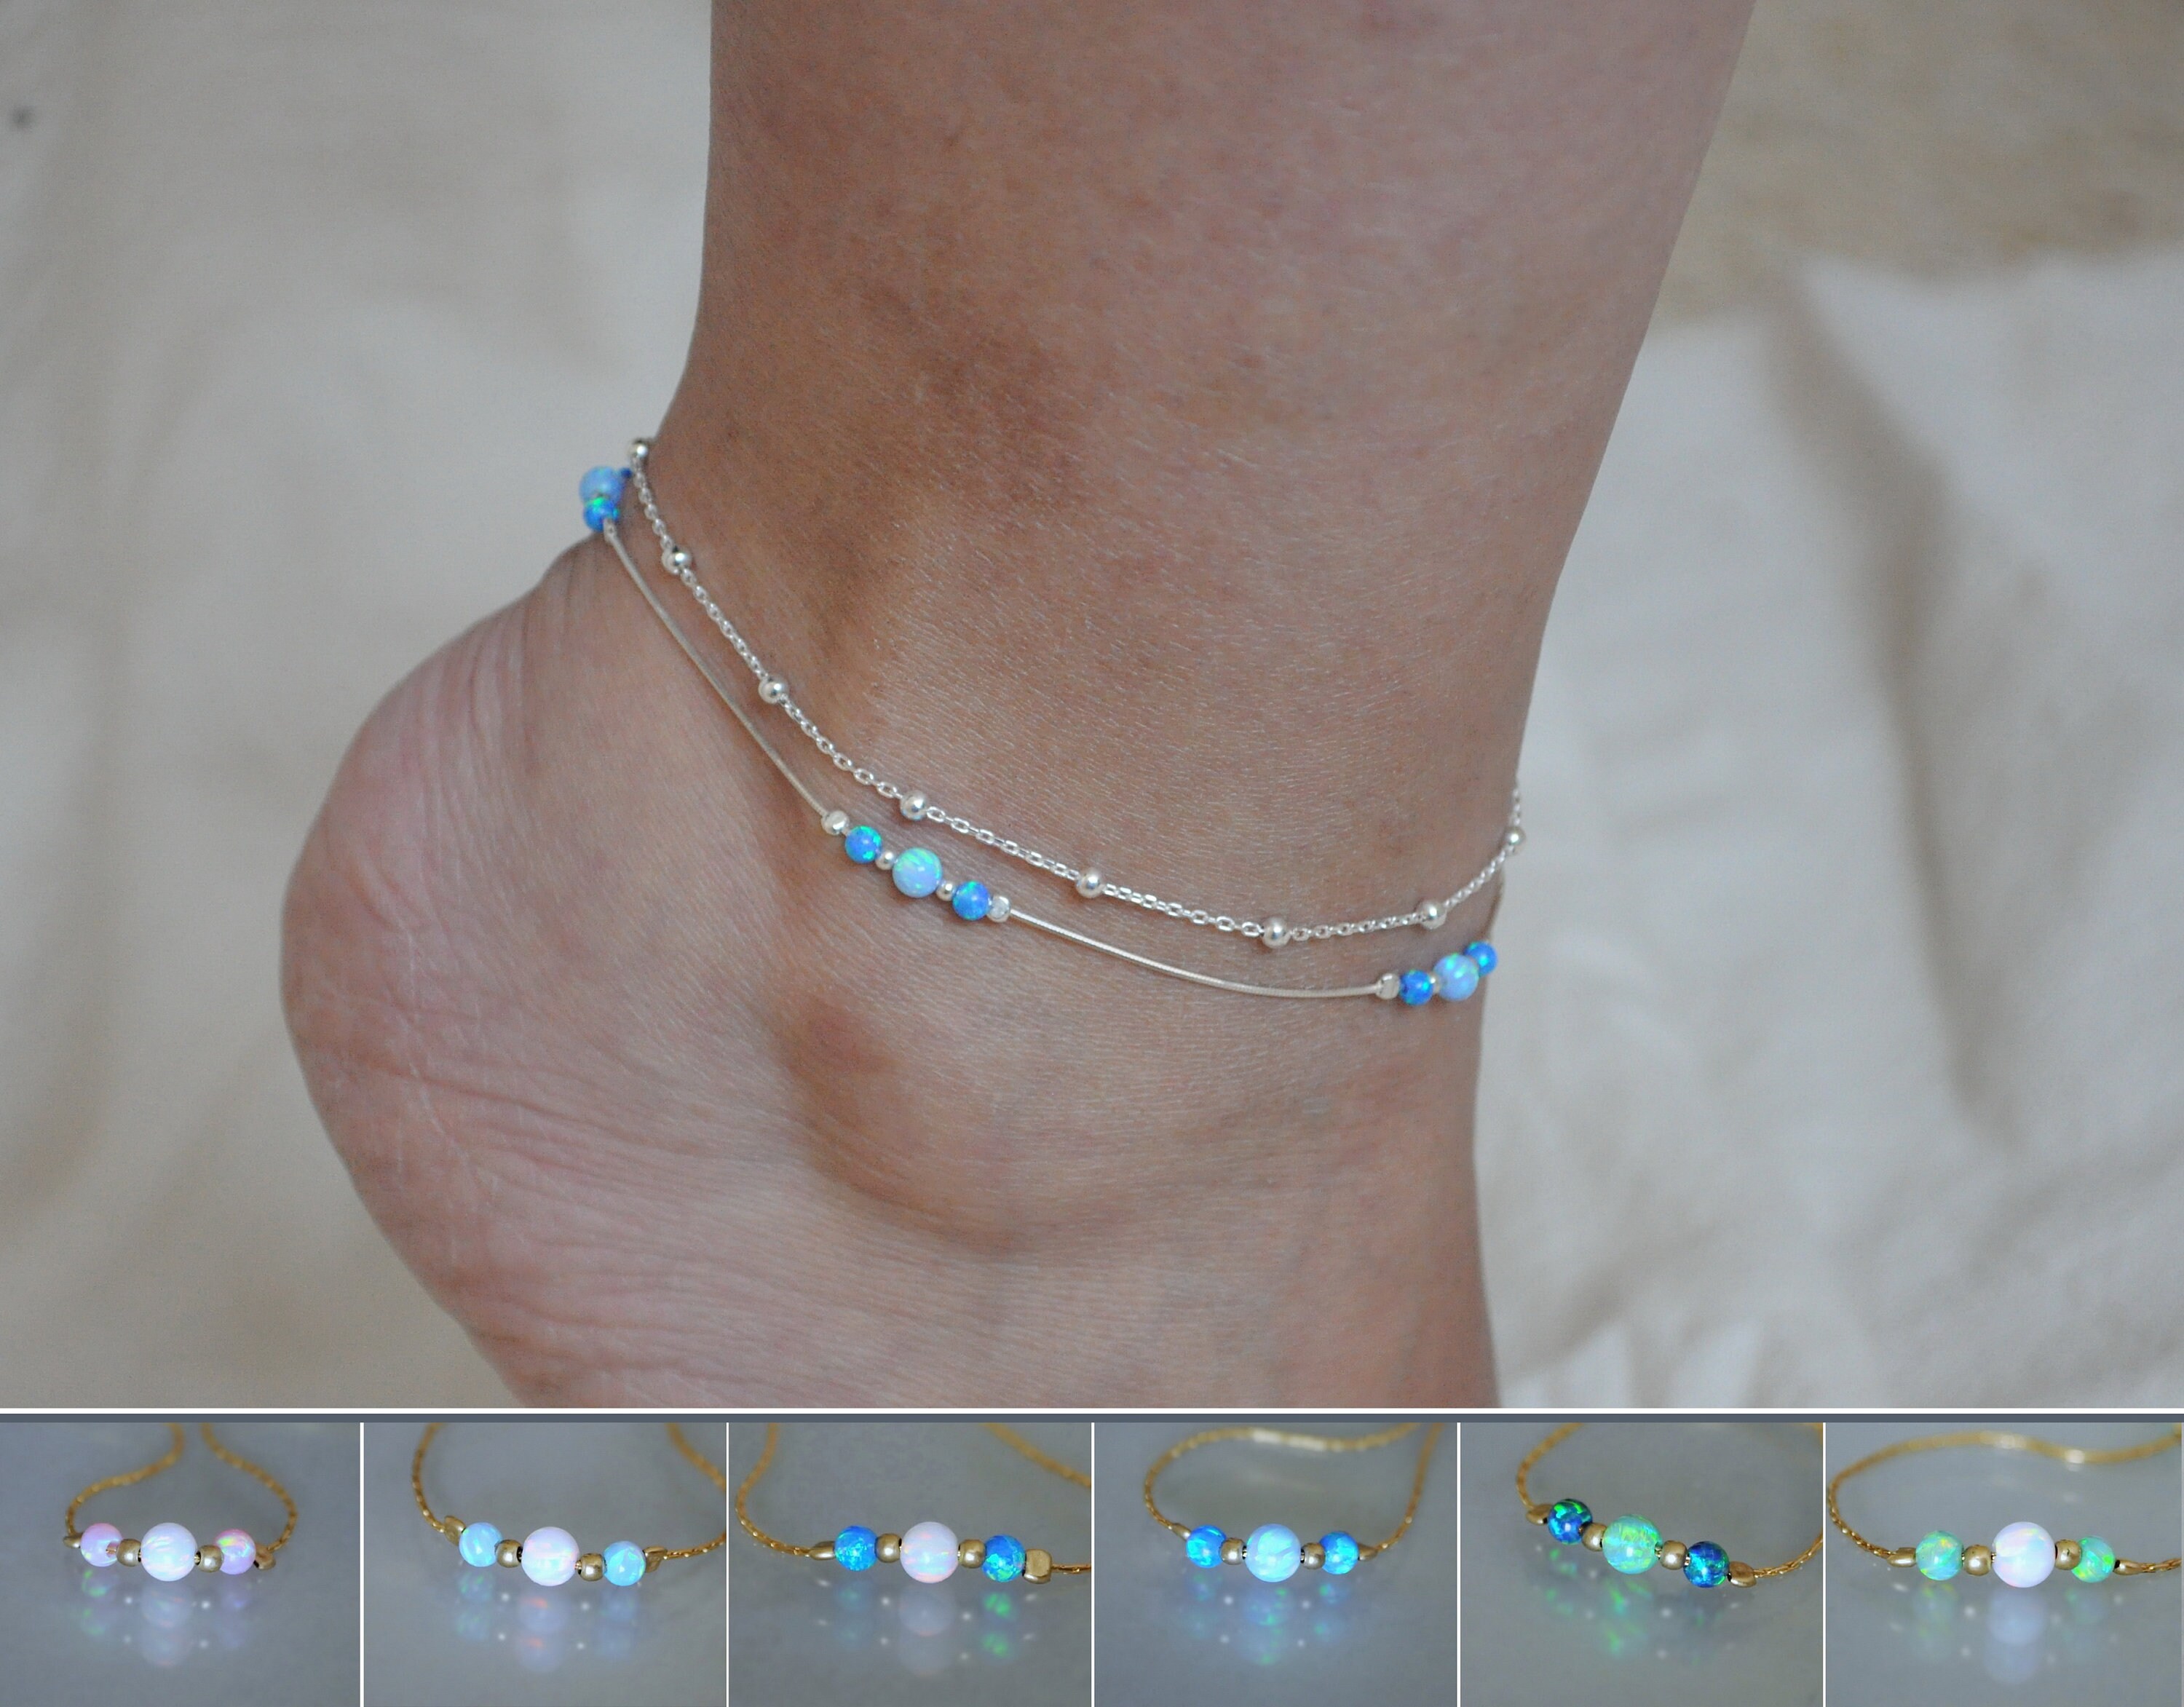 Opal Sterling Silver Anklet Set of 2 Handmade Ankle Bracelets Adjustable 9-11.5 Inch 